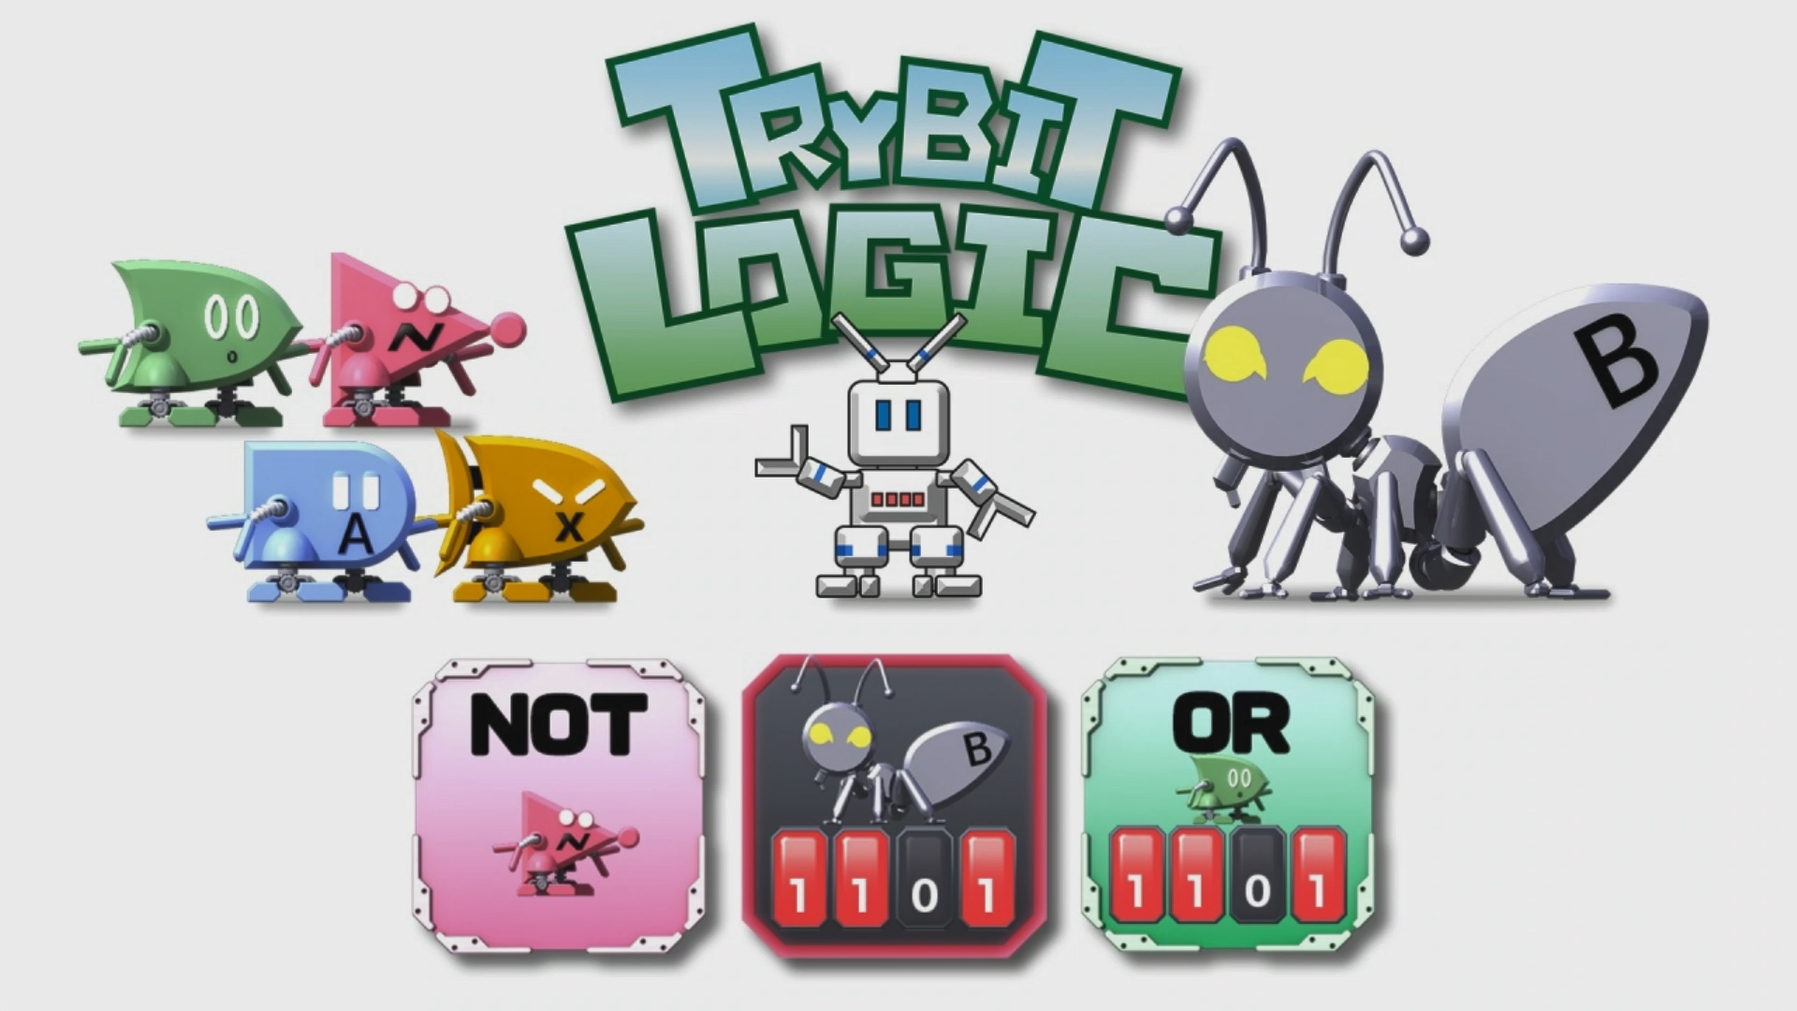 Jogo puzzle com foco em operações lógicas, Trybit Logic é